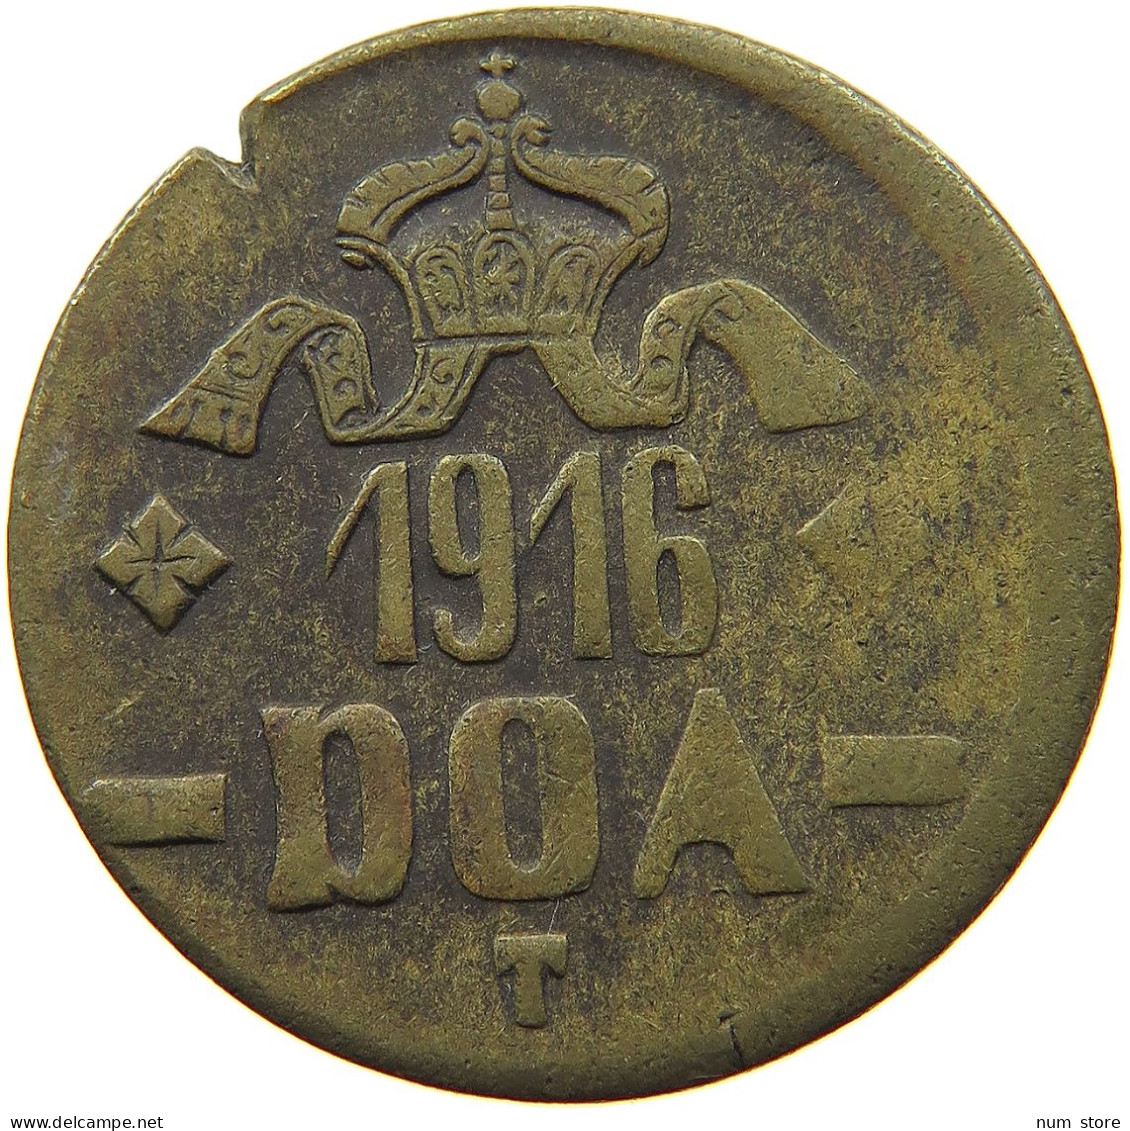 DEUTSCH OSTAFRIKA 20 HELLER 1916 T REVERSE B #a009 0071 - German East Africa